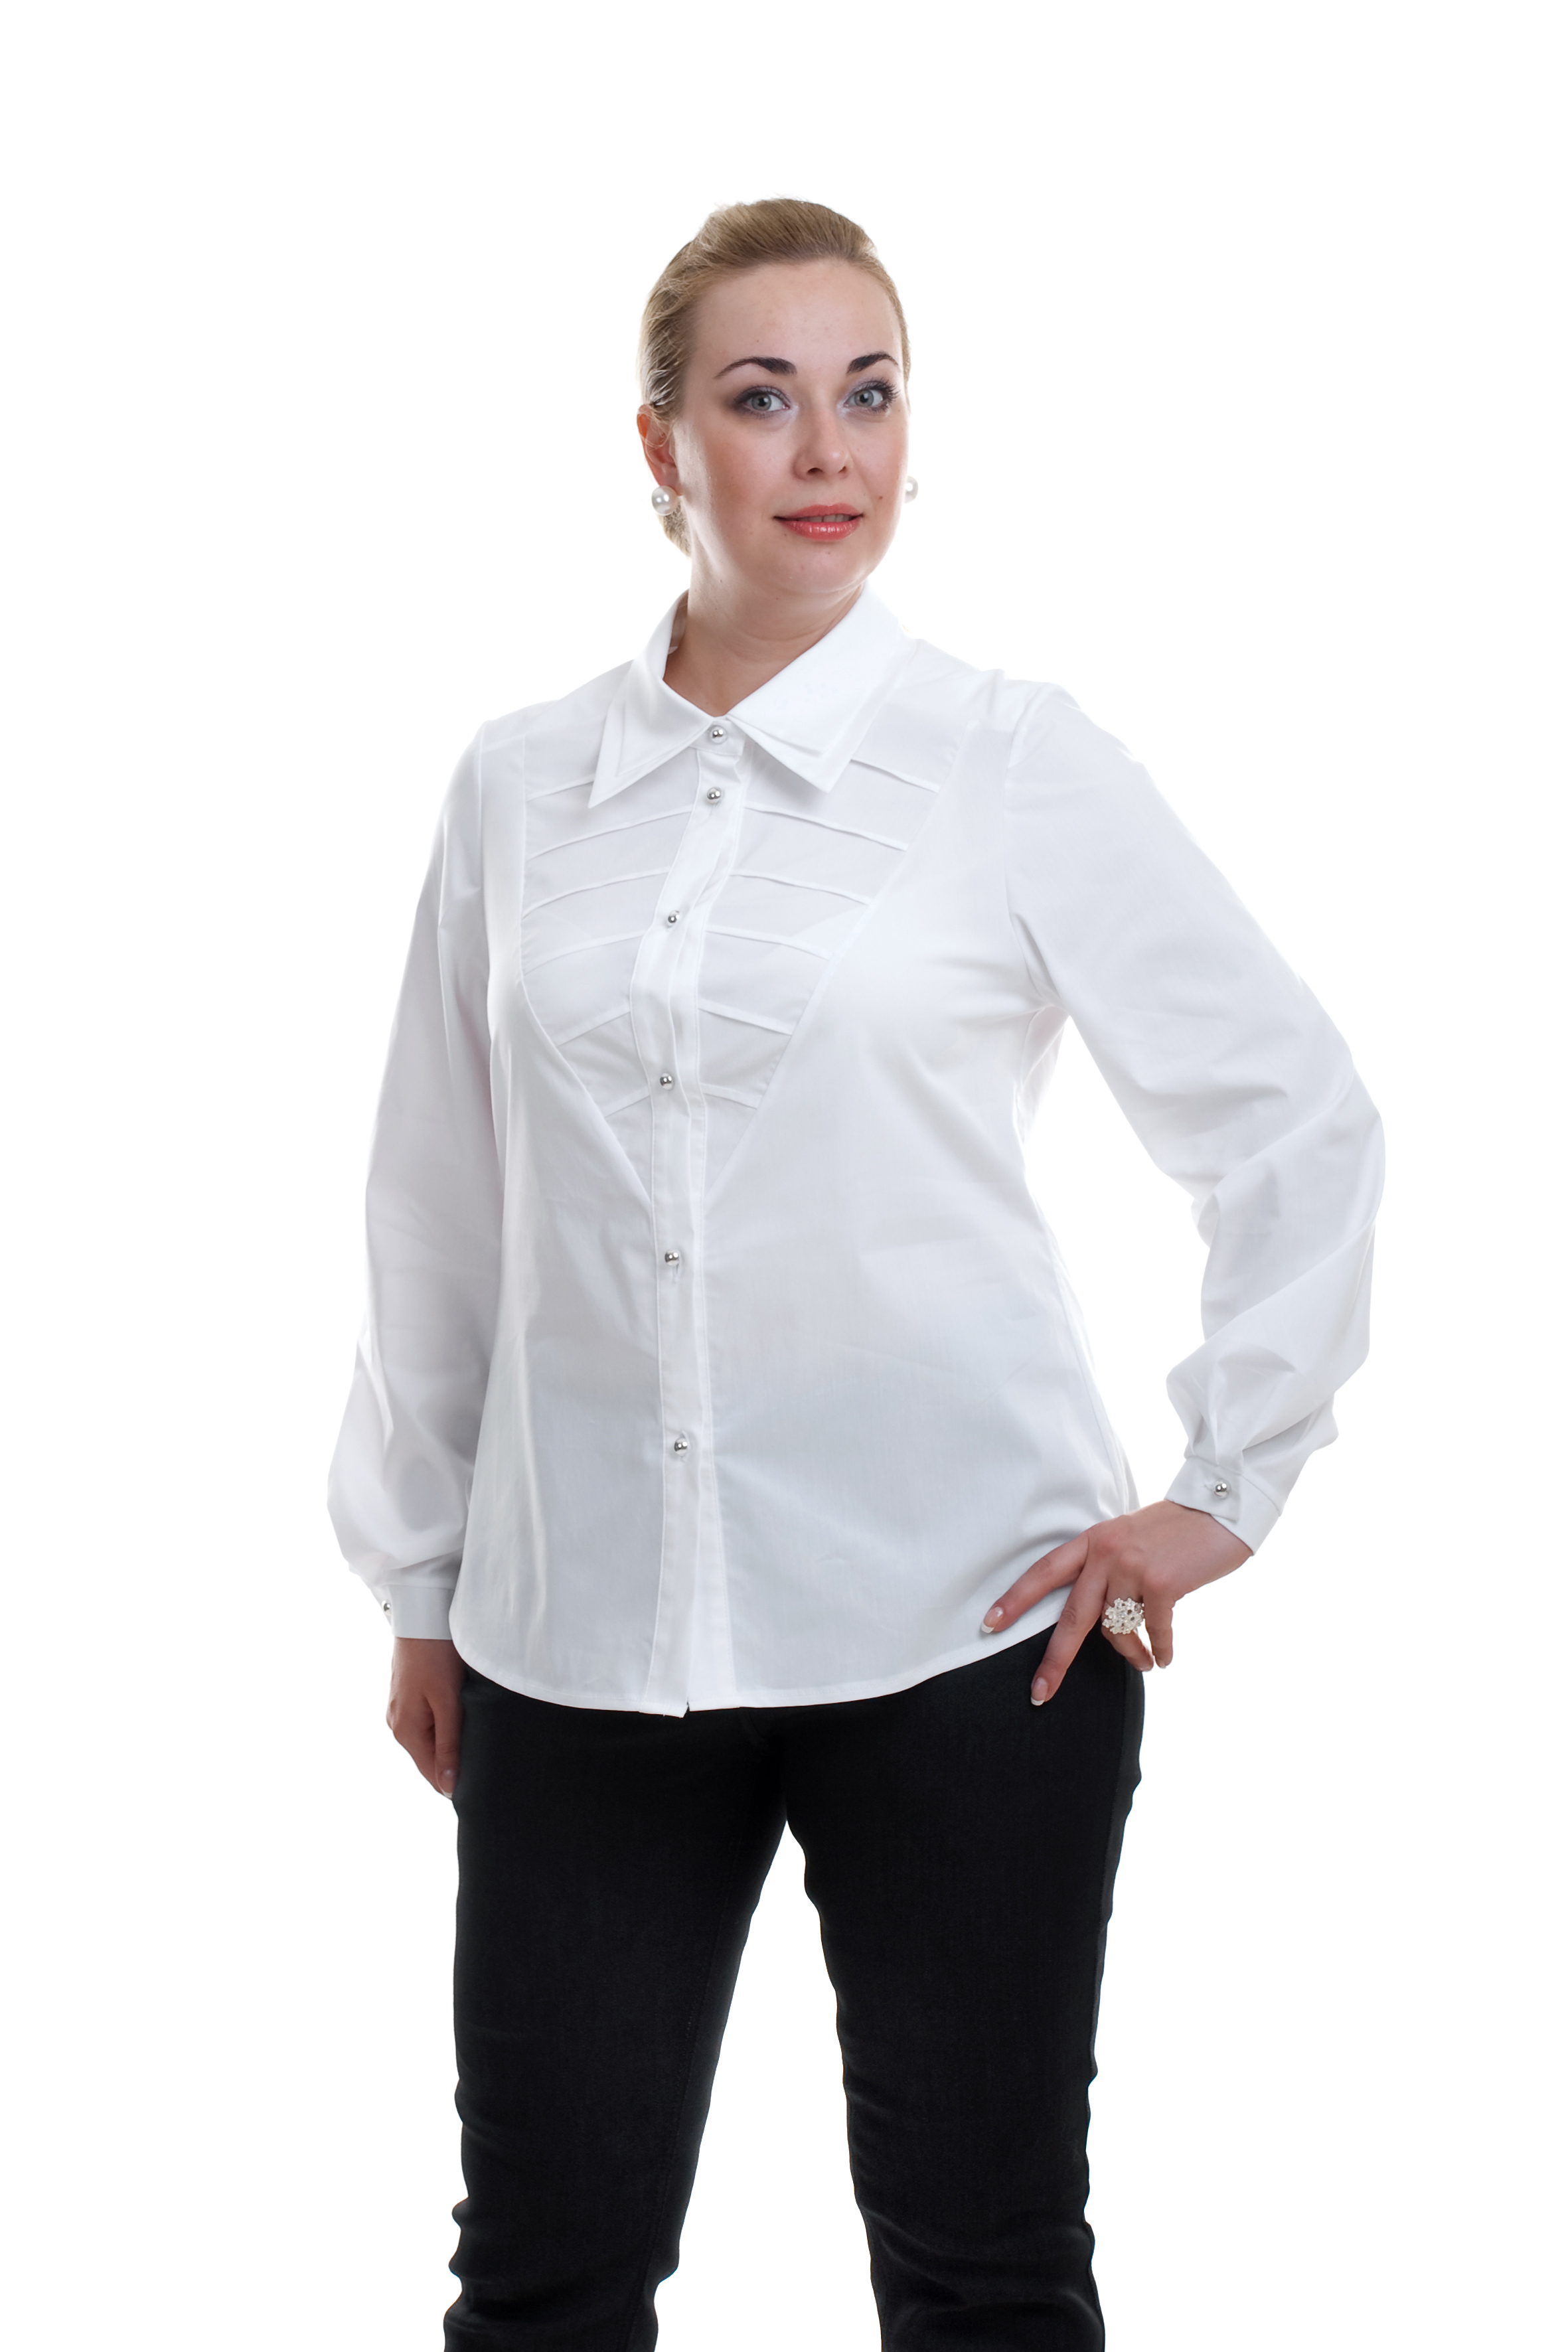 Купить блузку 54 размера. Рубашка для полных женщин. Белая блузка для полных женщин. Блузки женские для полных.